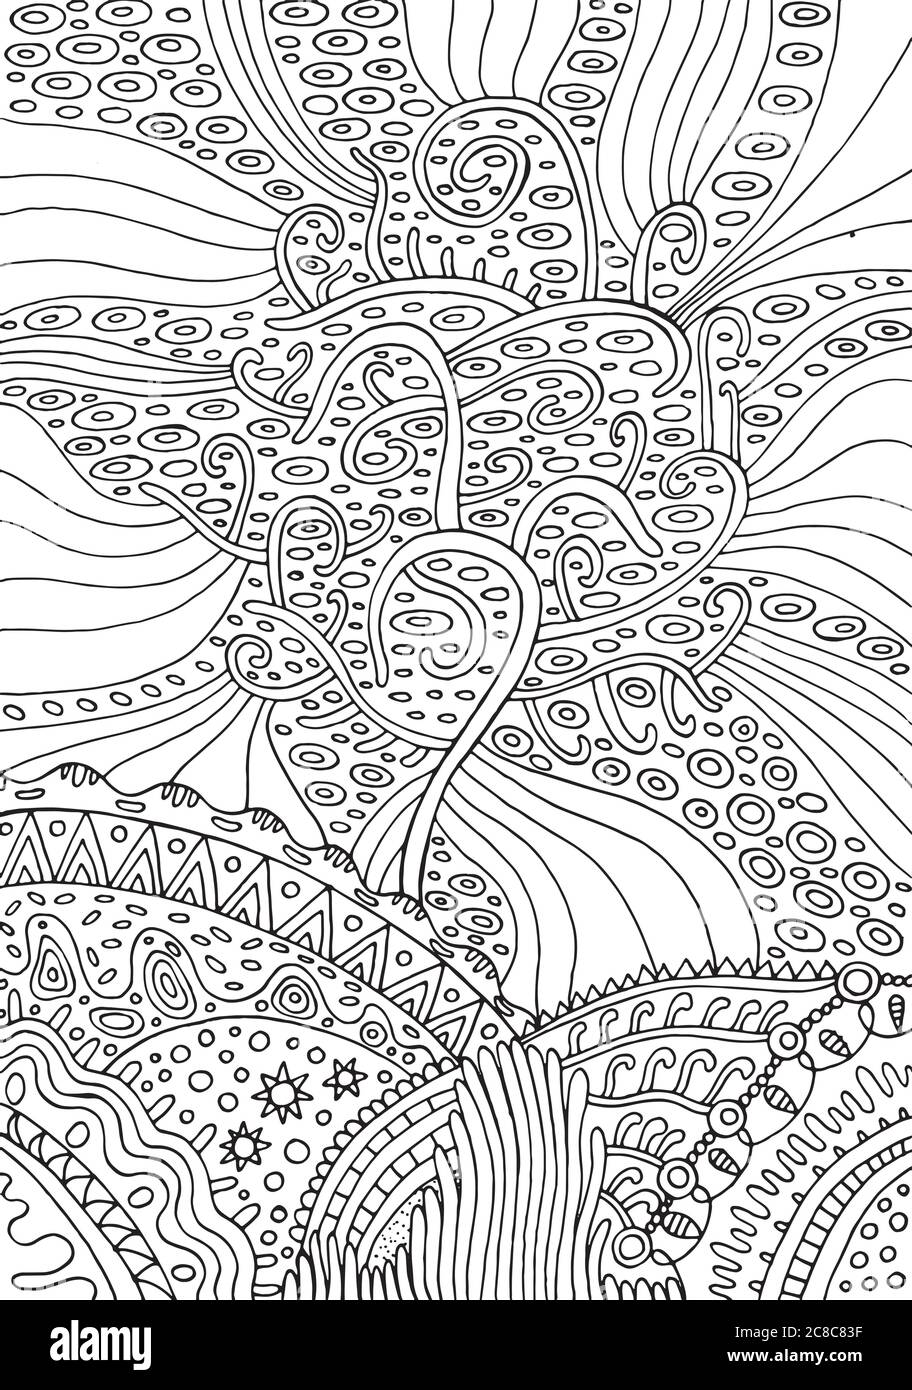 Arc-en-ciel de la vie. Page de coloriage psuchechélique fantaisie surréaliste pour adultes. Illustration vectorielle Illustration de Vecteur